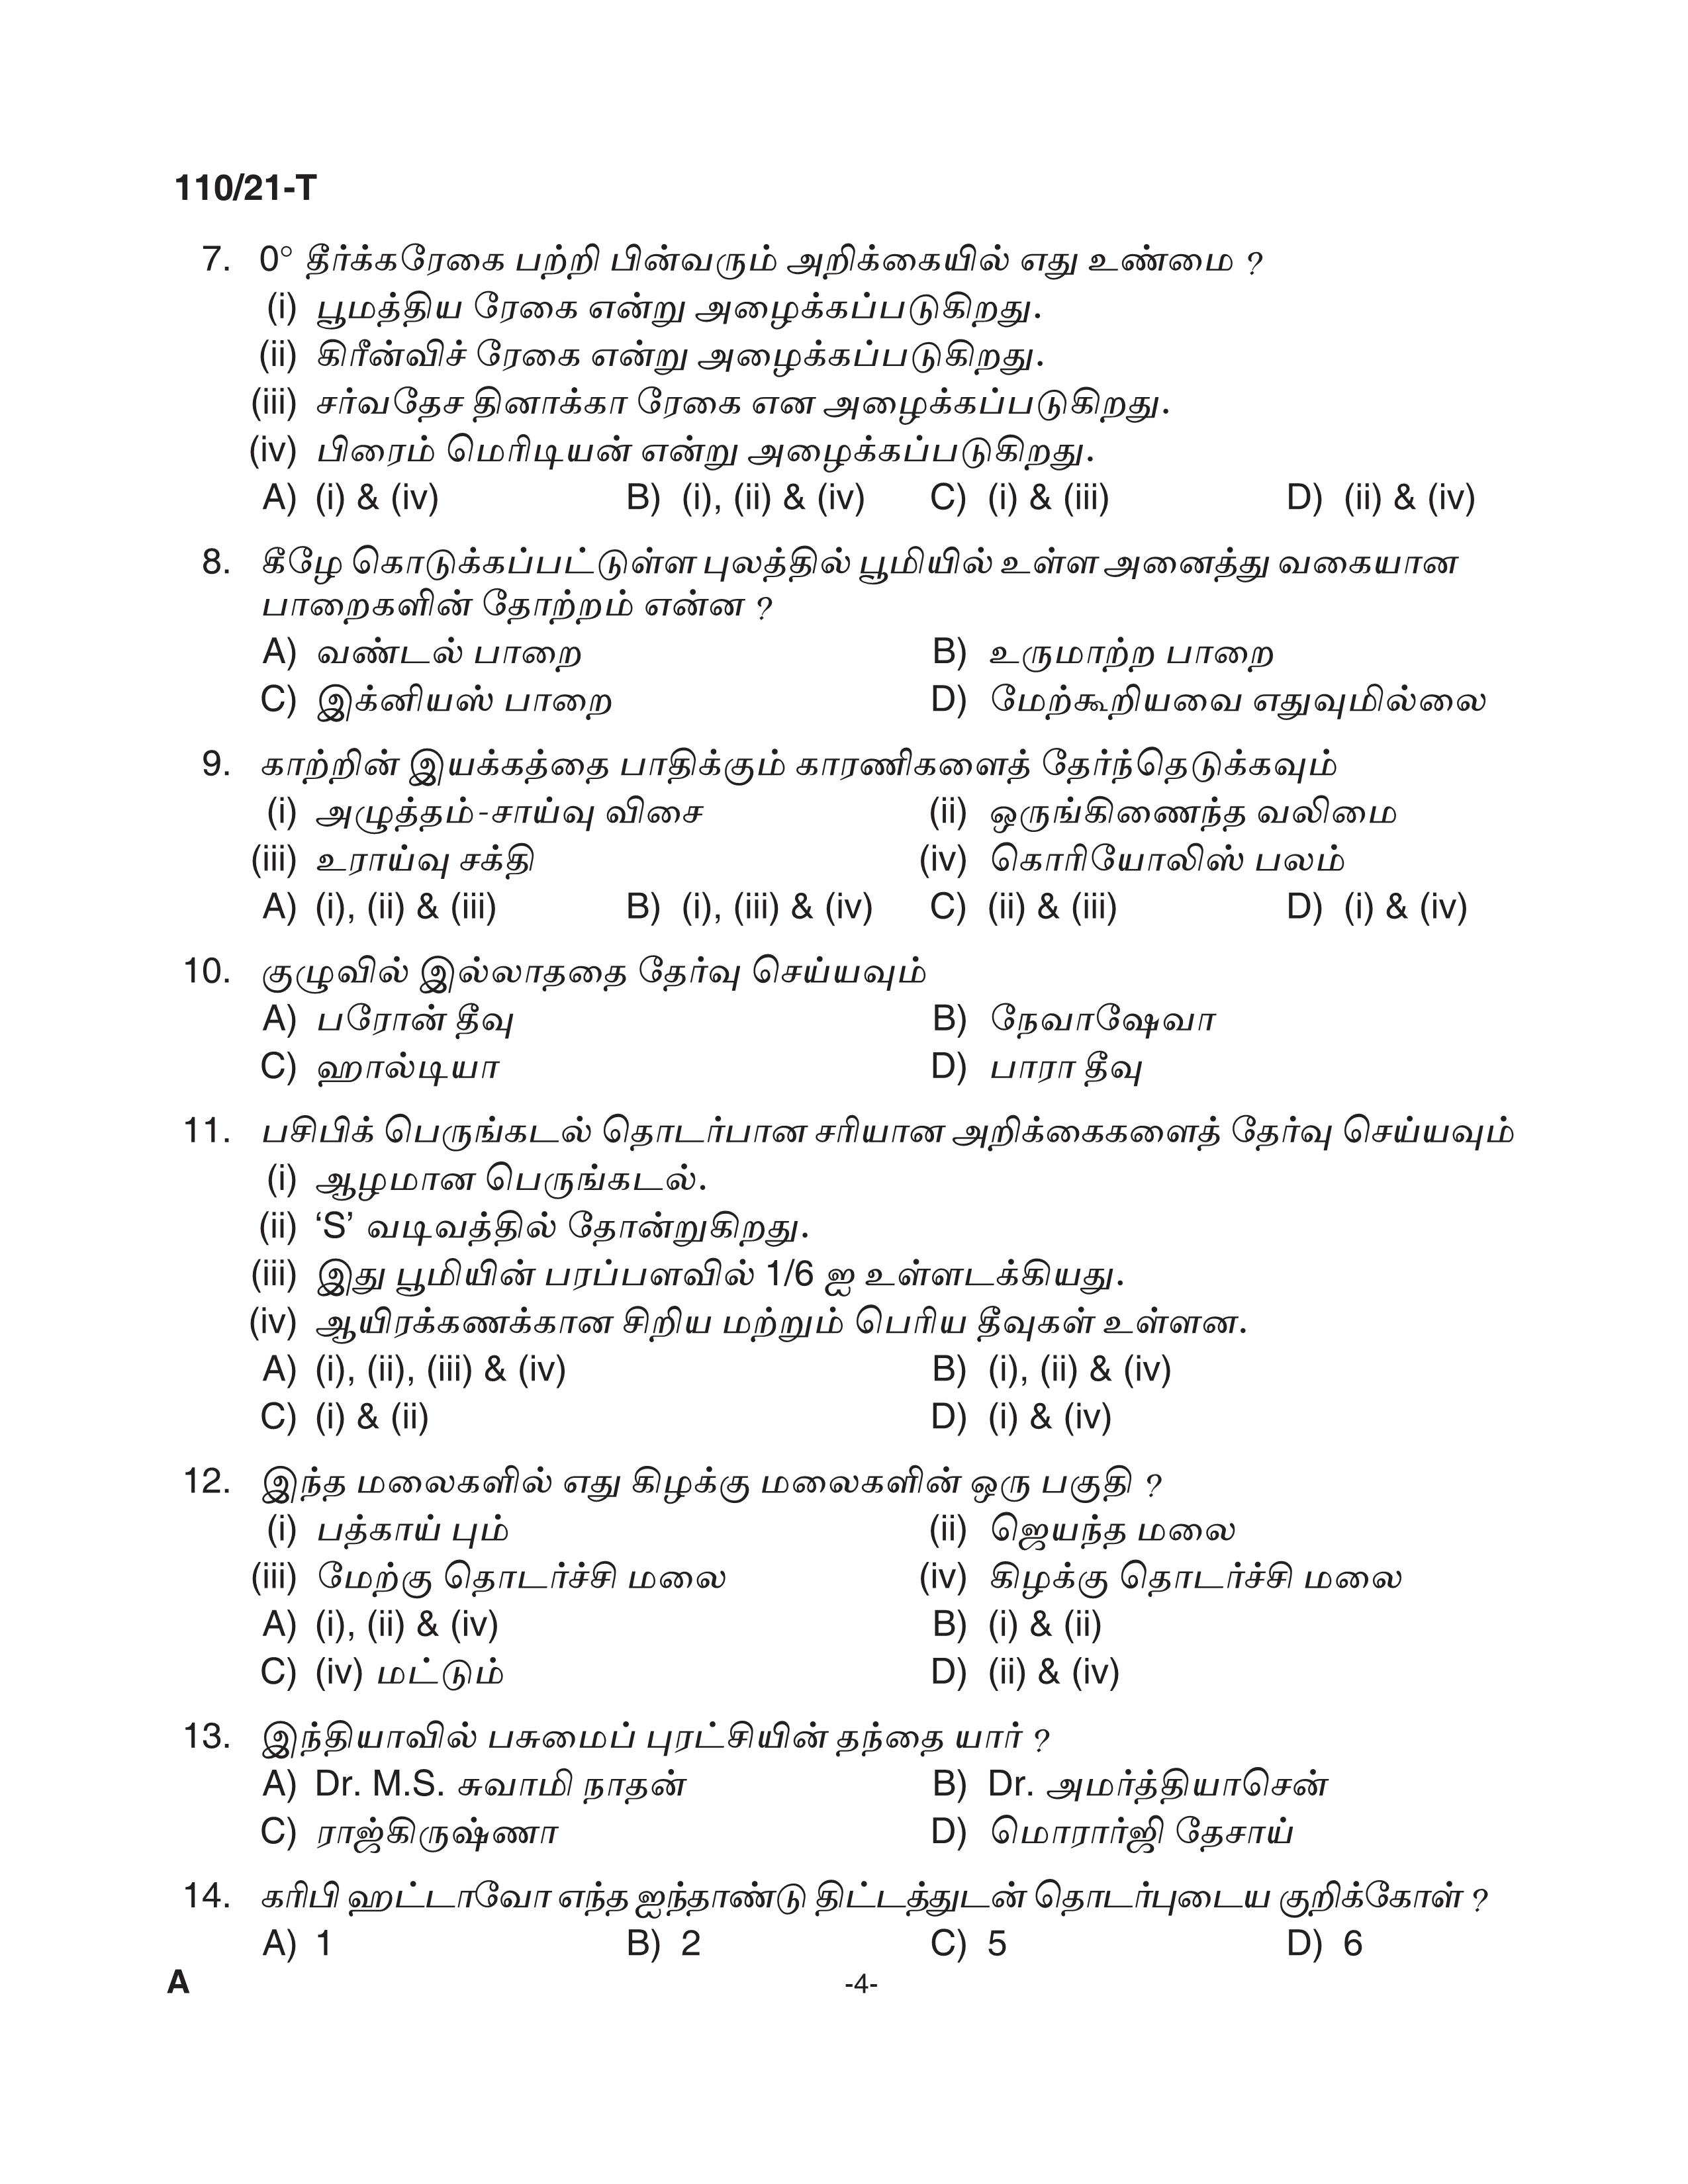 KPSC Assistant Grade II Sergeant Tamil Exam 2021 Code 1102021 T 3